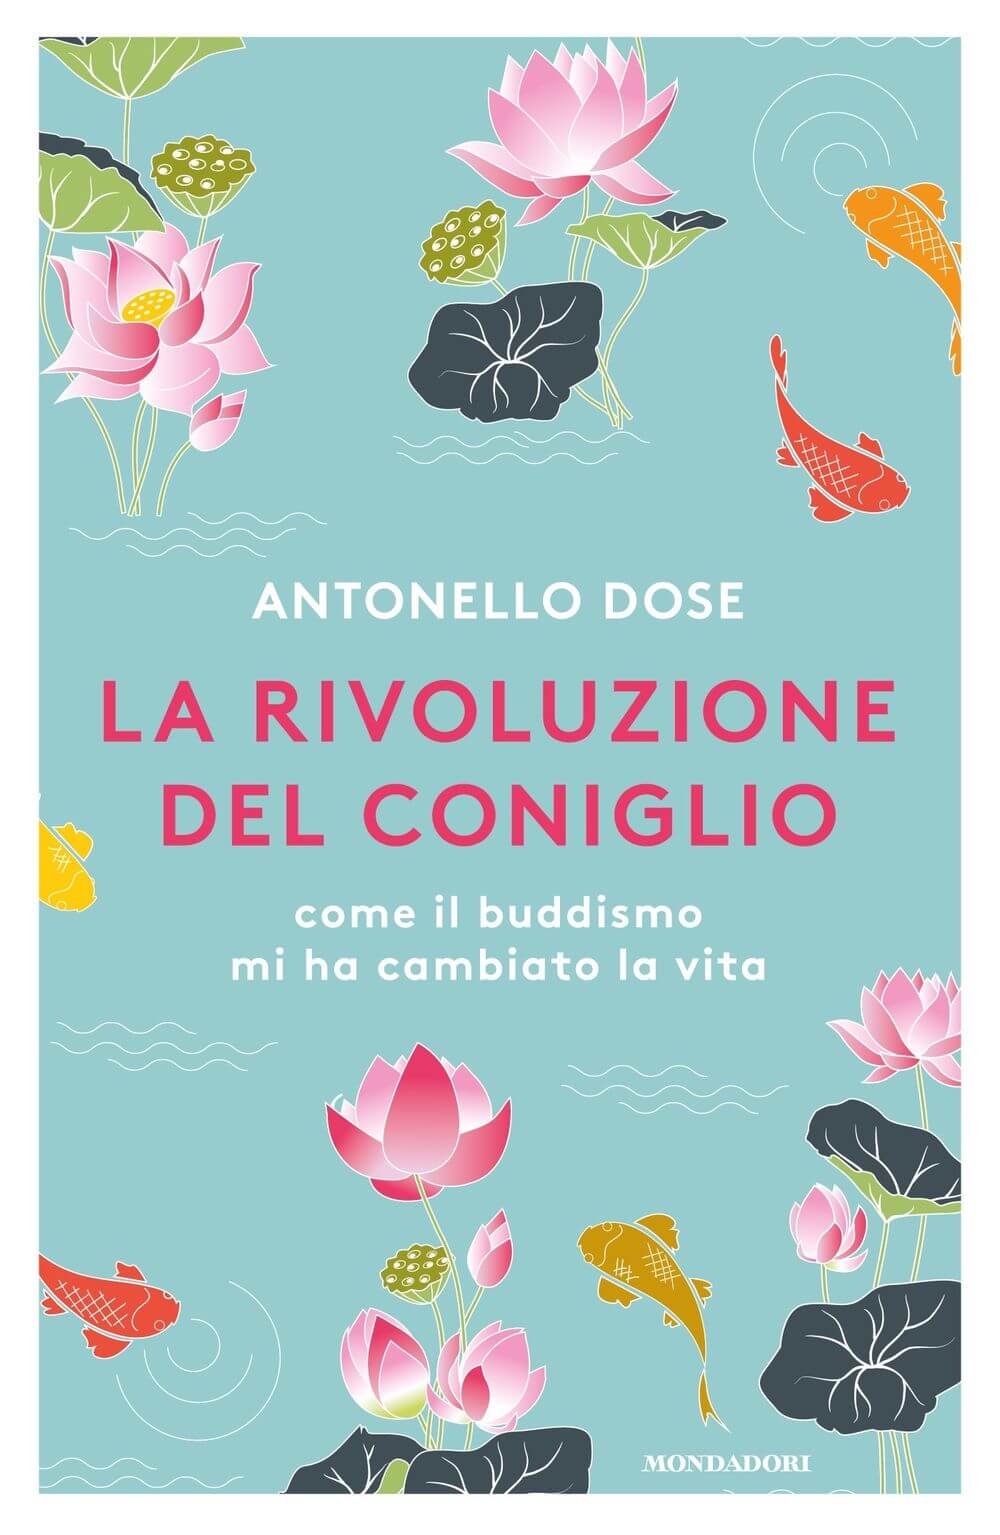 Antonello Dose: "Si può vivere felici con l'Hiv" - 9788852079177 0 0 1535 80 - Gay.it